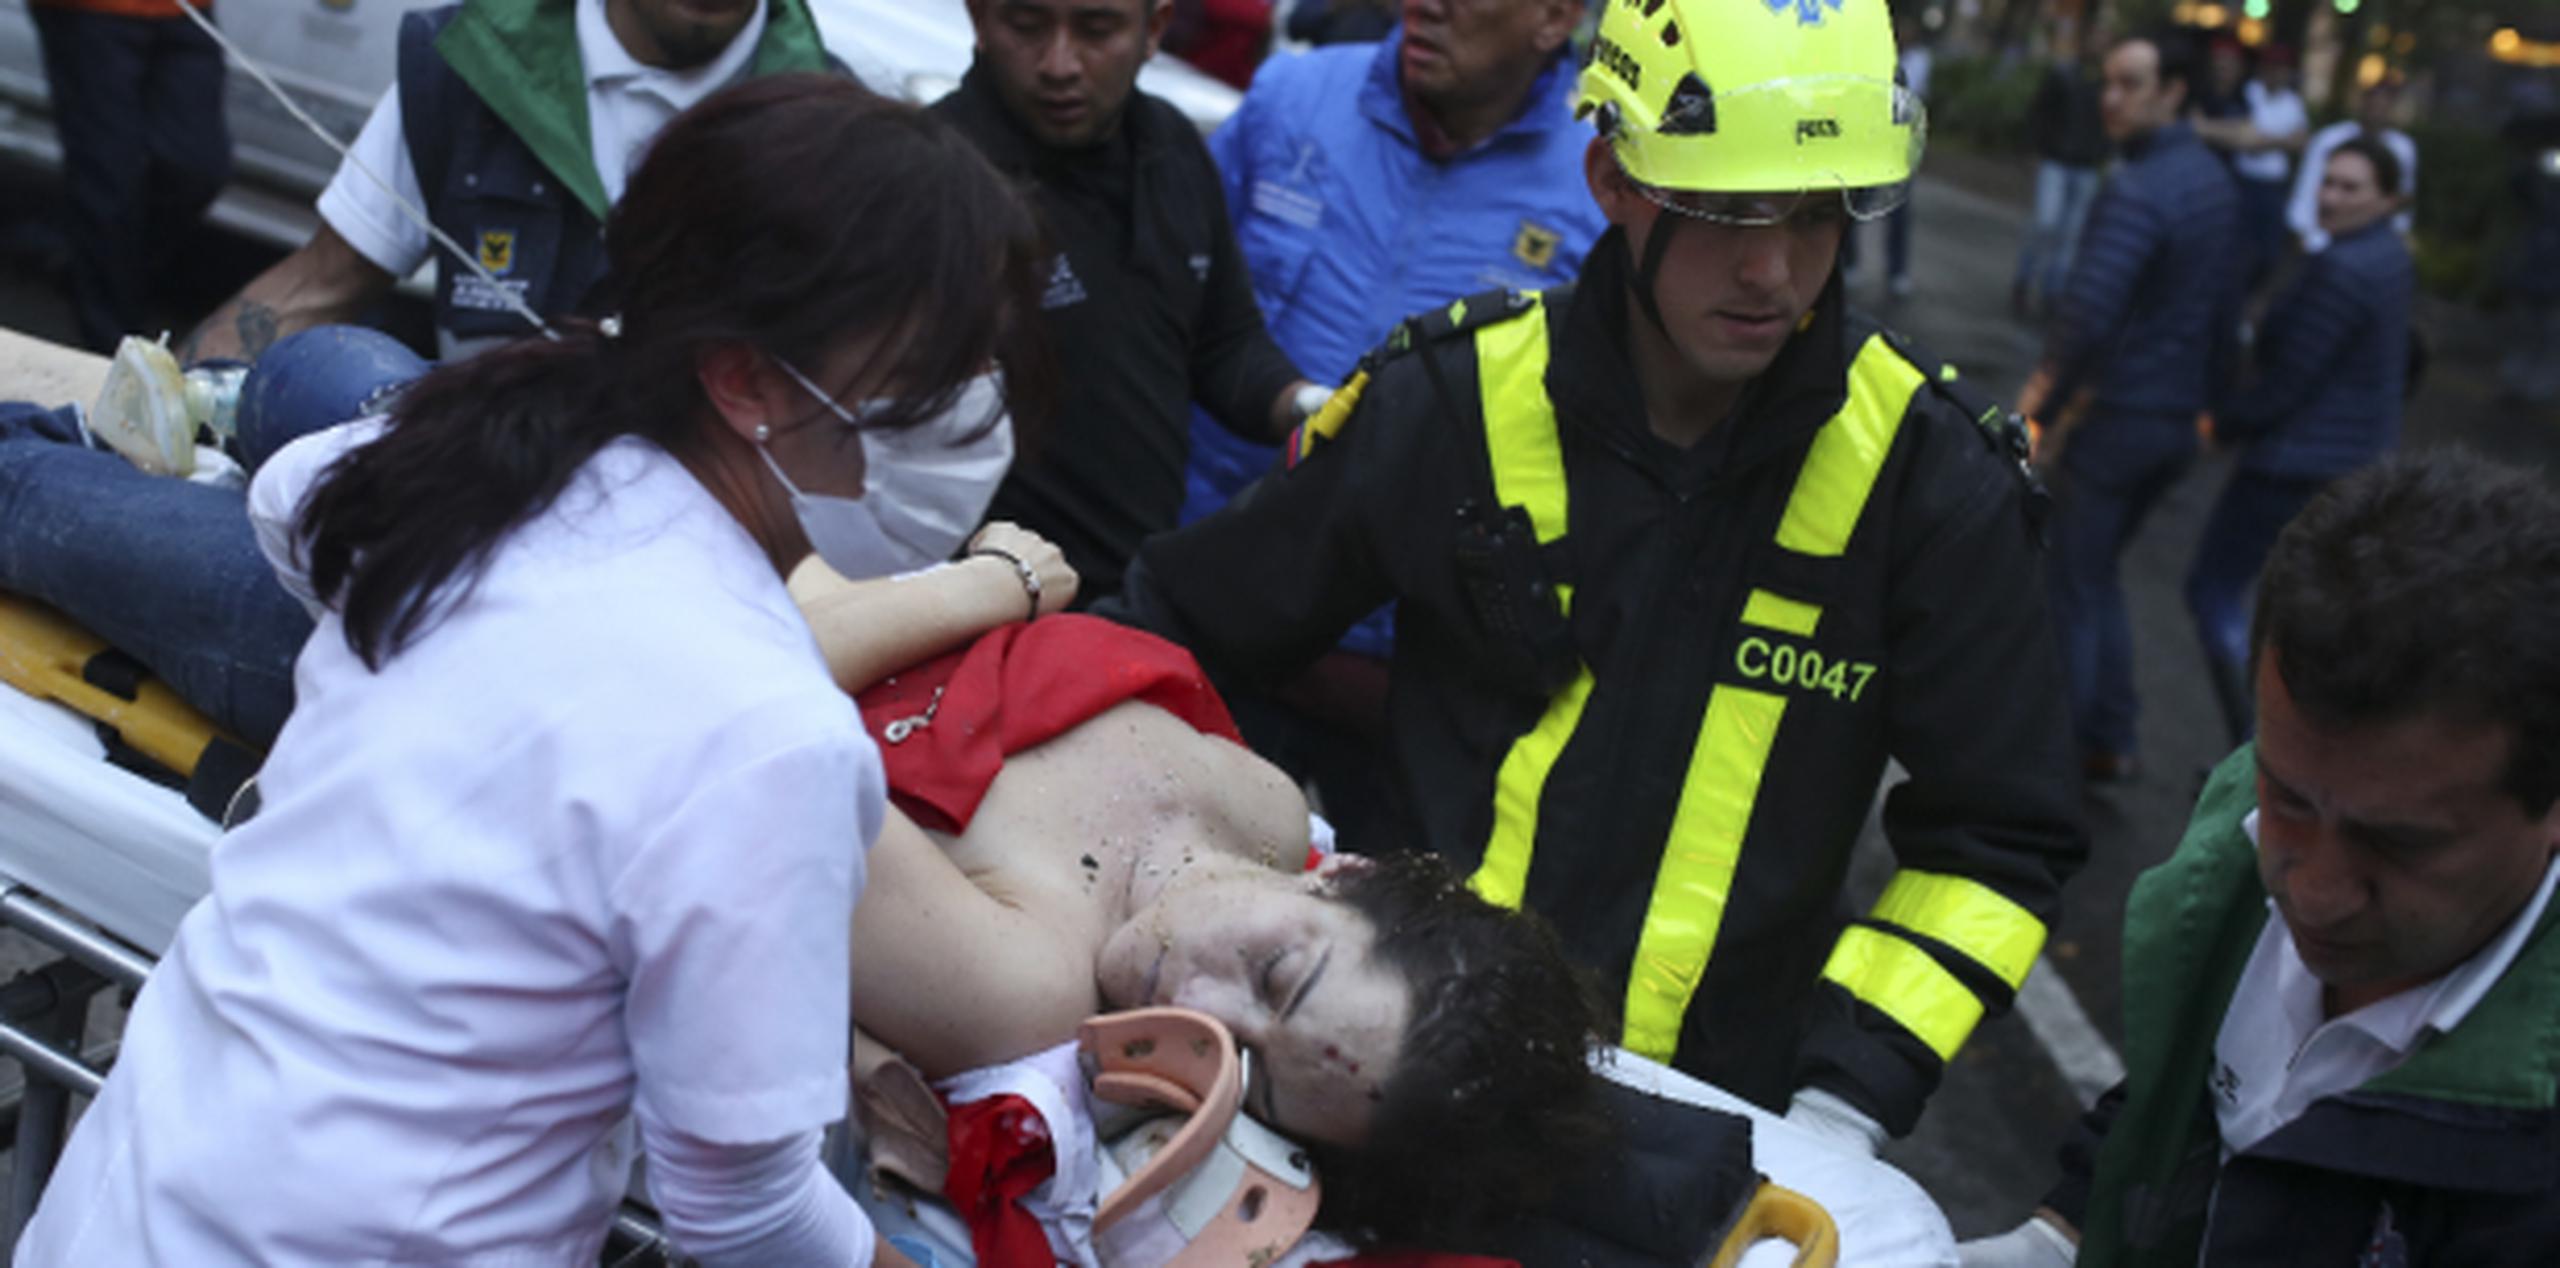 Mujer lesionada es evacuada en una camilla después de la explosión. (AP / Ricardo Mazalan)